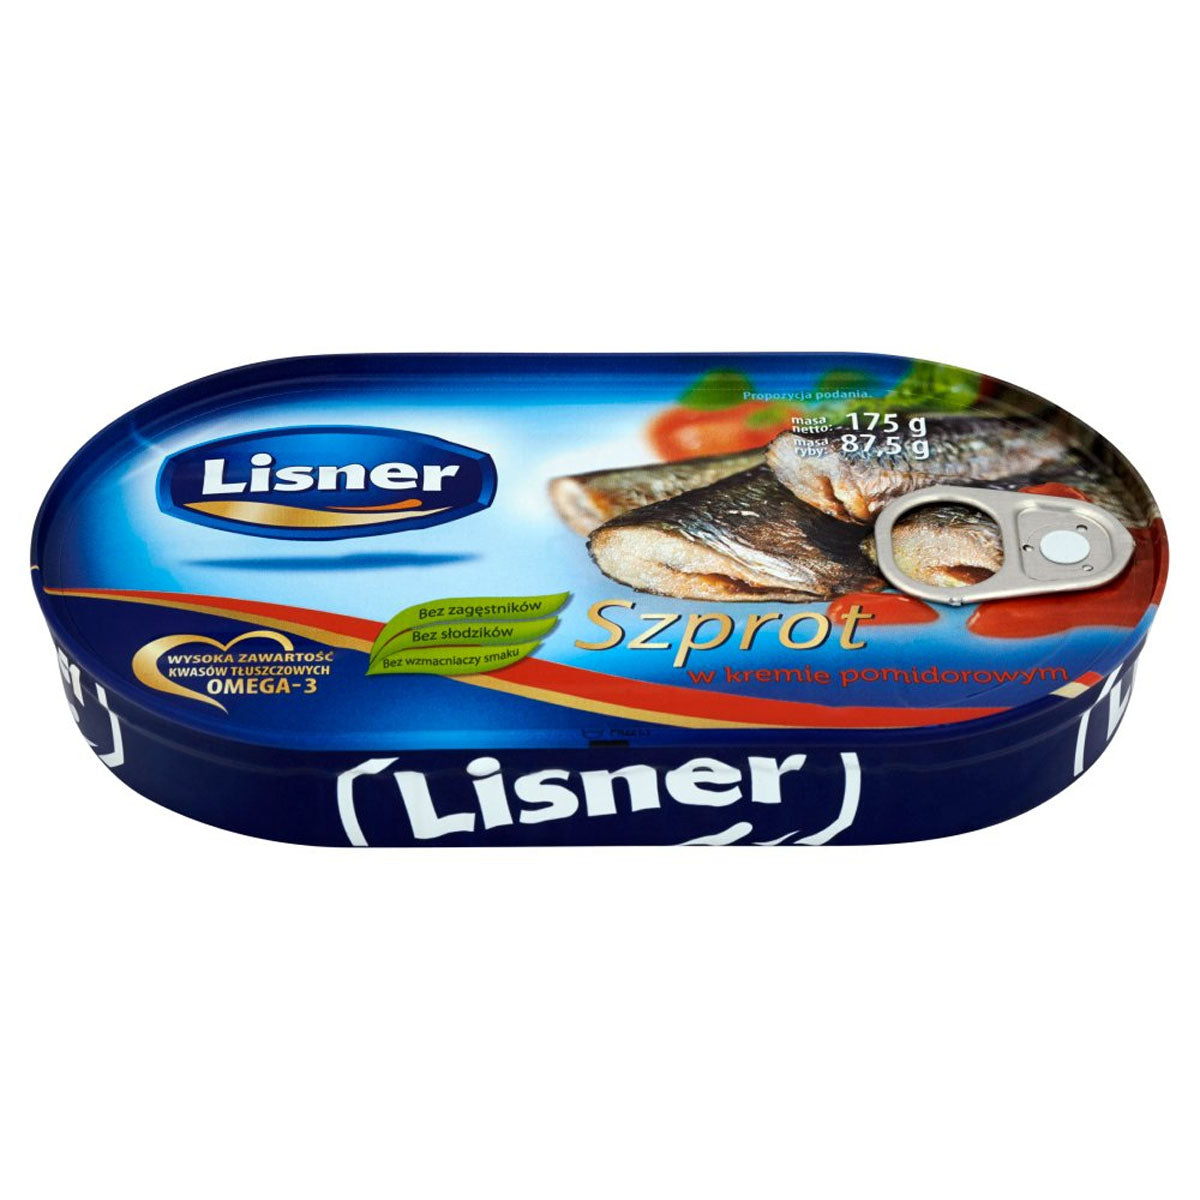 Lisner - Sprat in Tomato - 175g of fish in a tin.